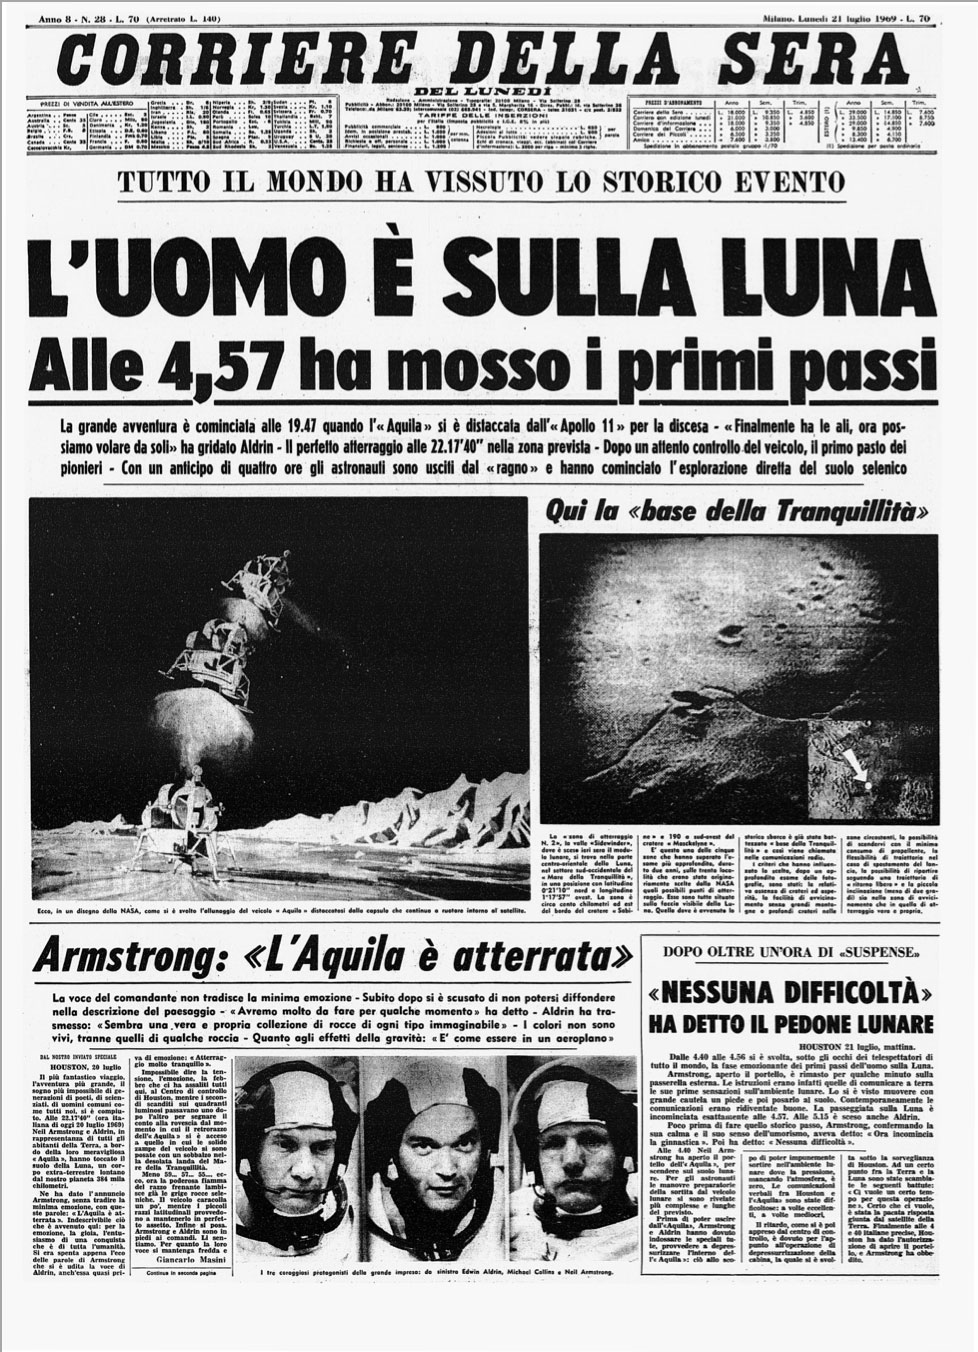 La prima pagina del Corriere del 21 luglio 1969 - Archivio storico Corriere della Sera, Fondazione Corriere della Sera